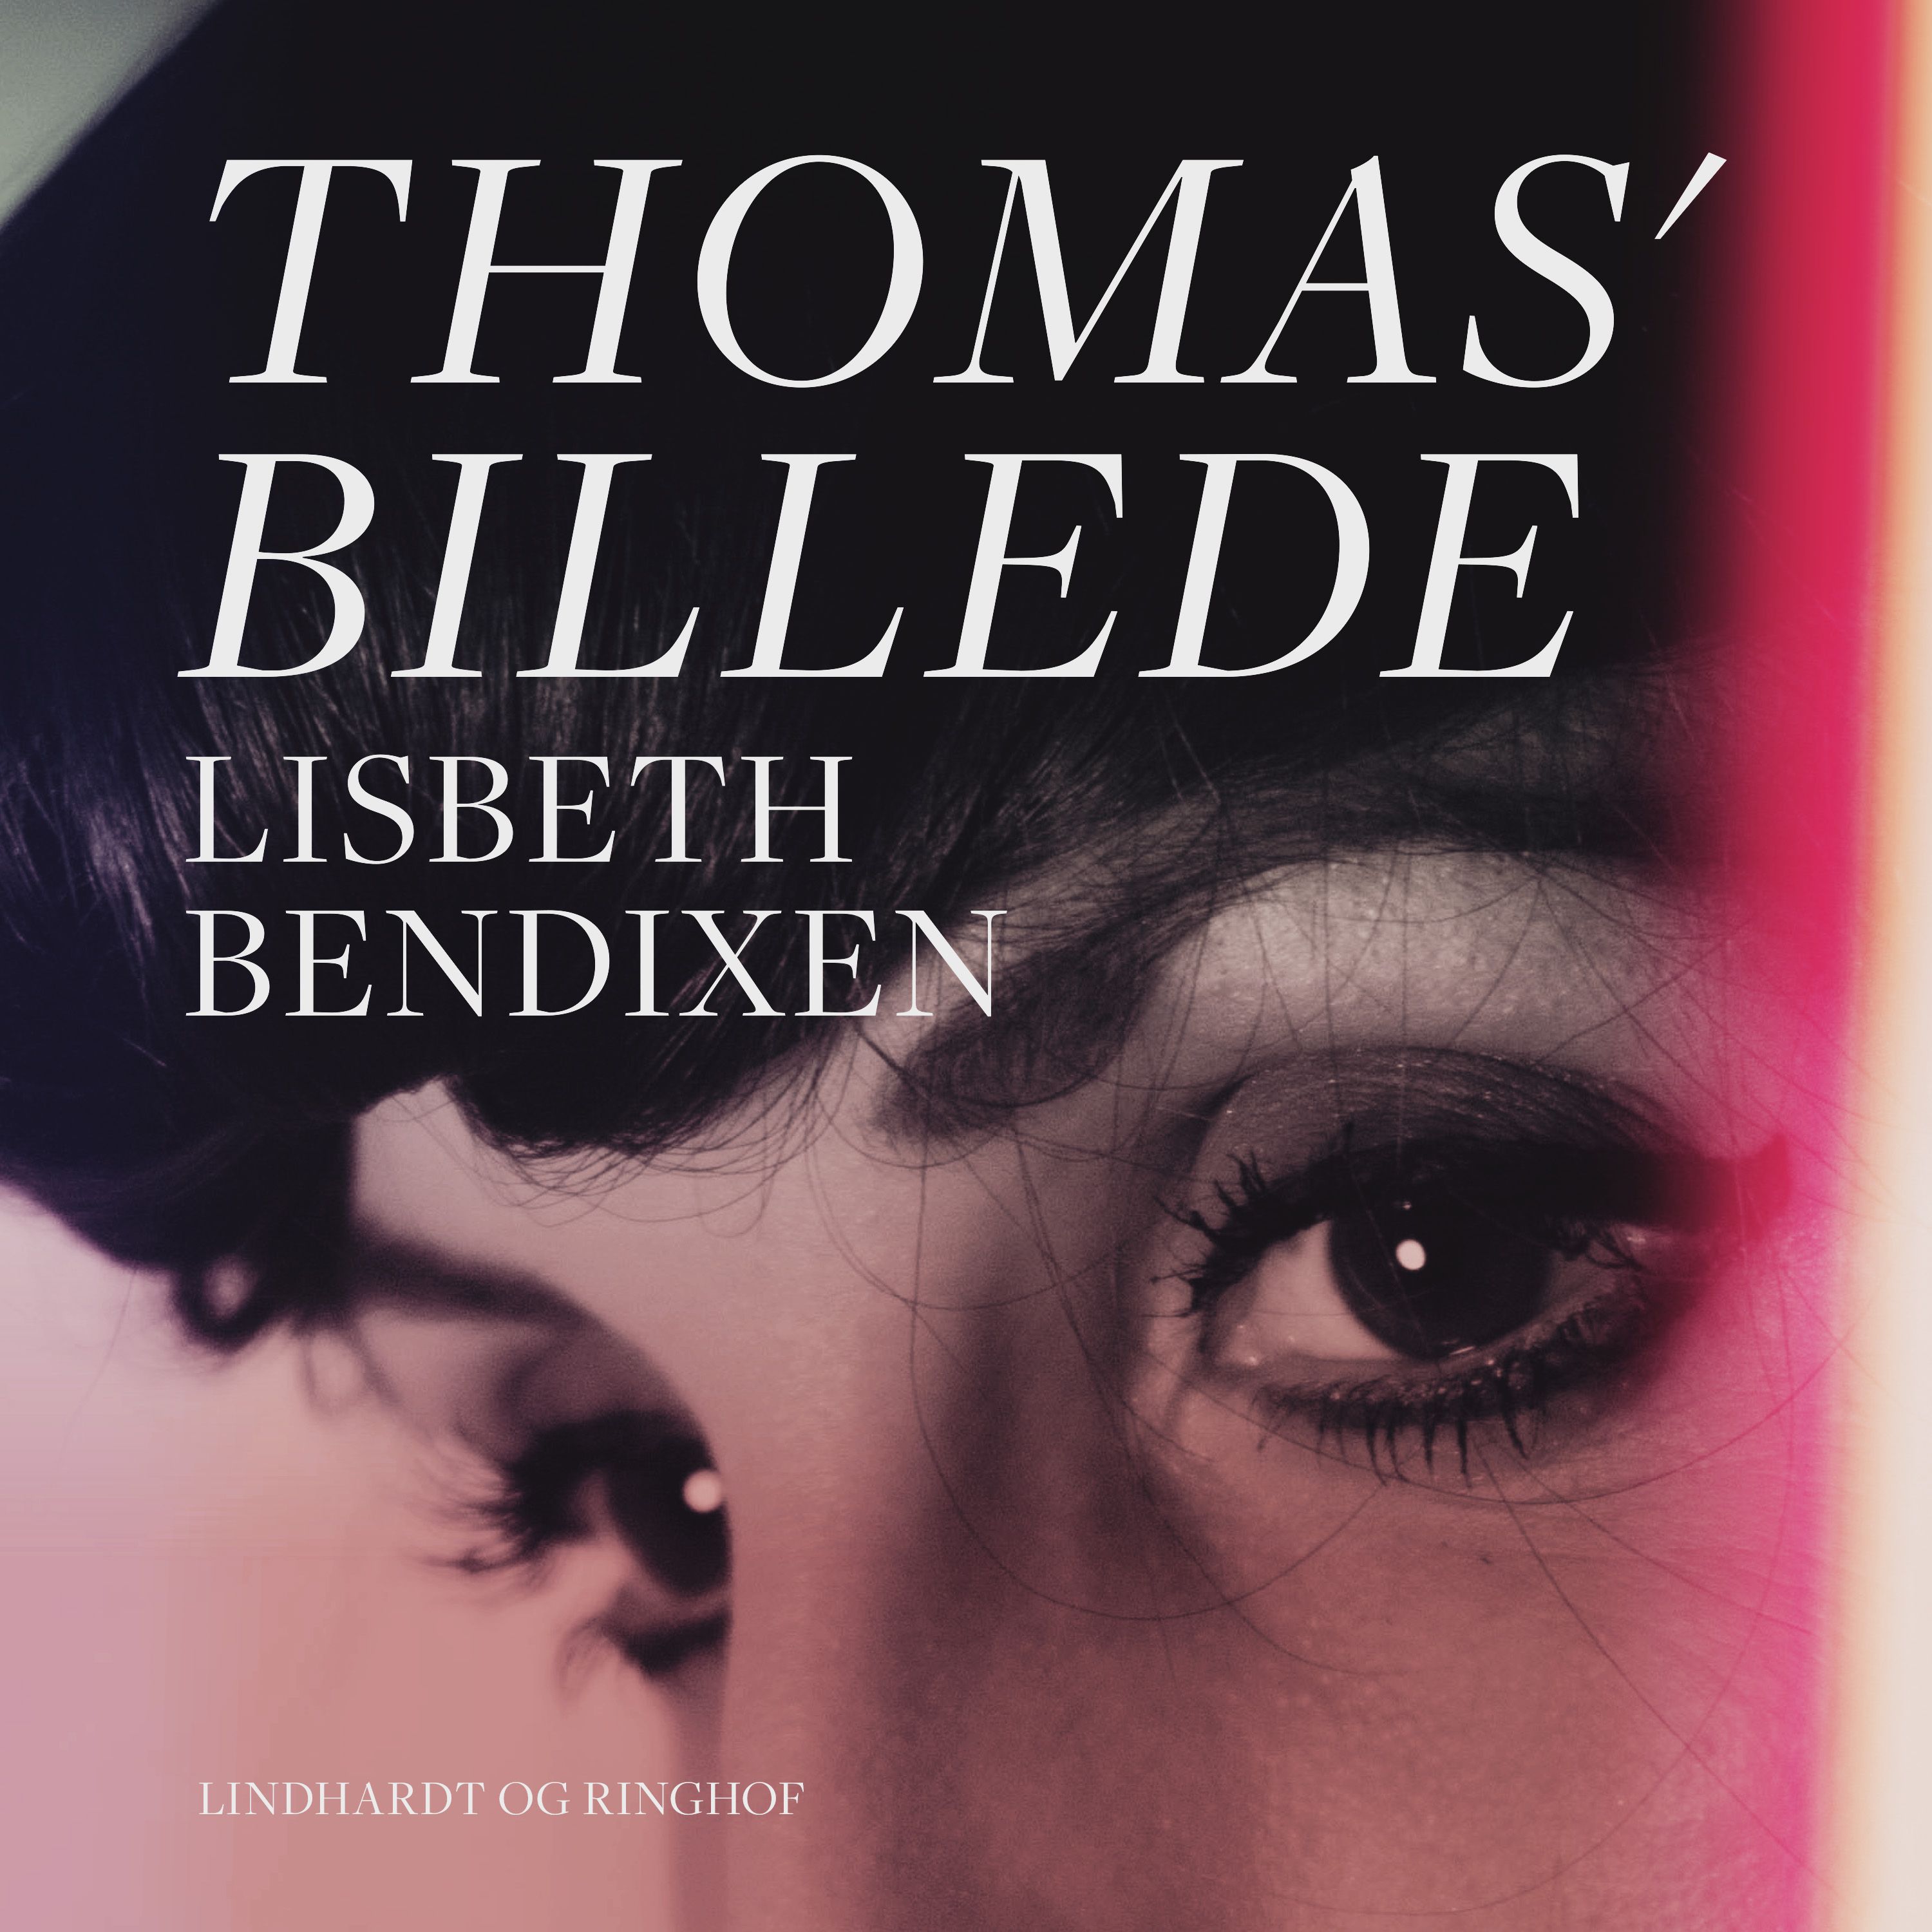 Thomas' billede, audiobook by Lisbeth Bendixen